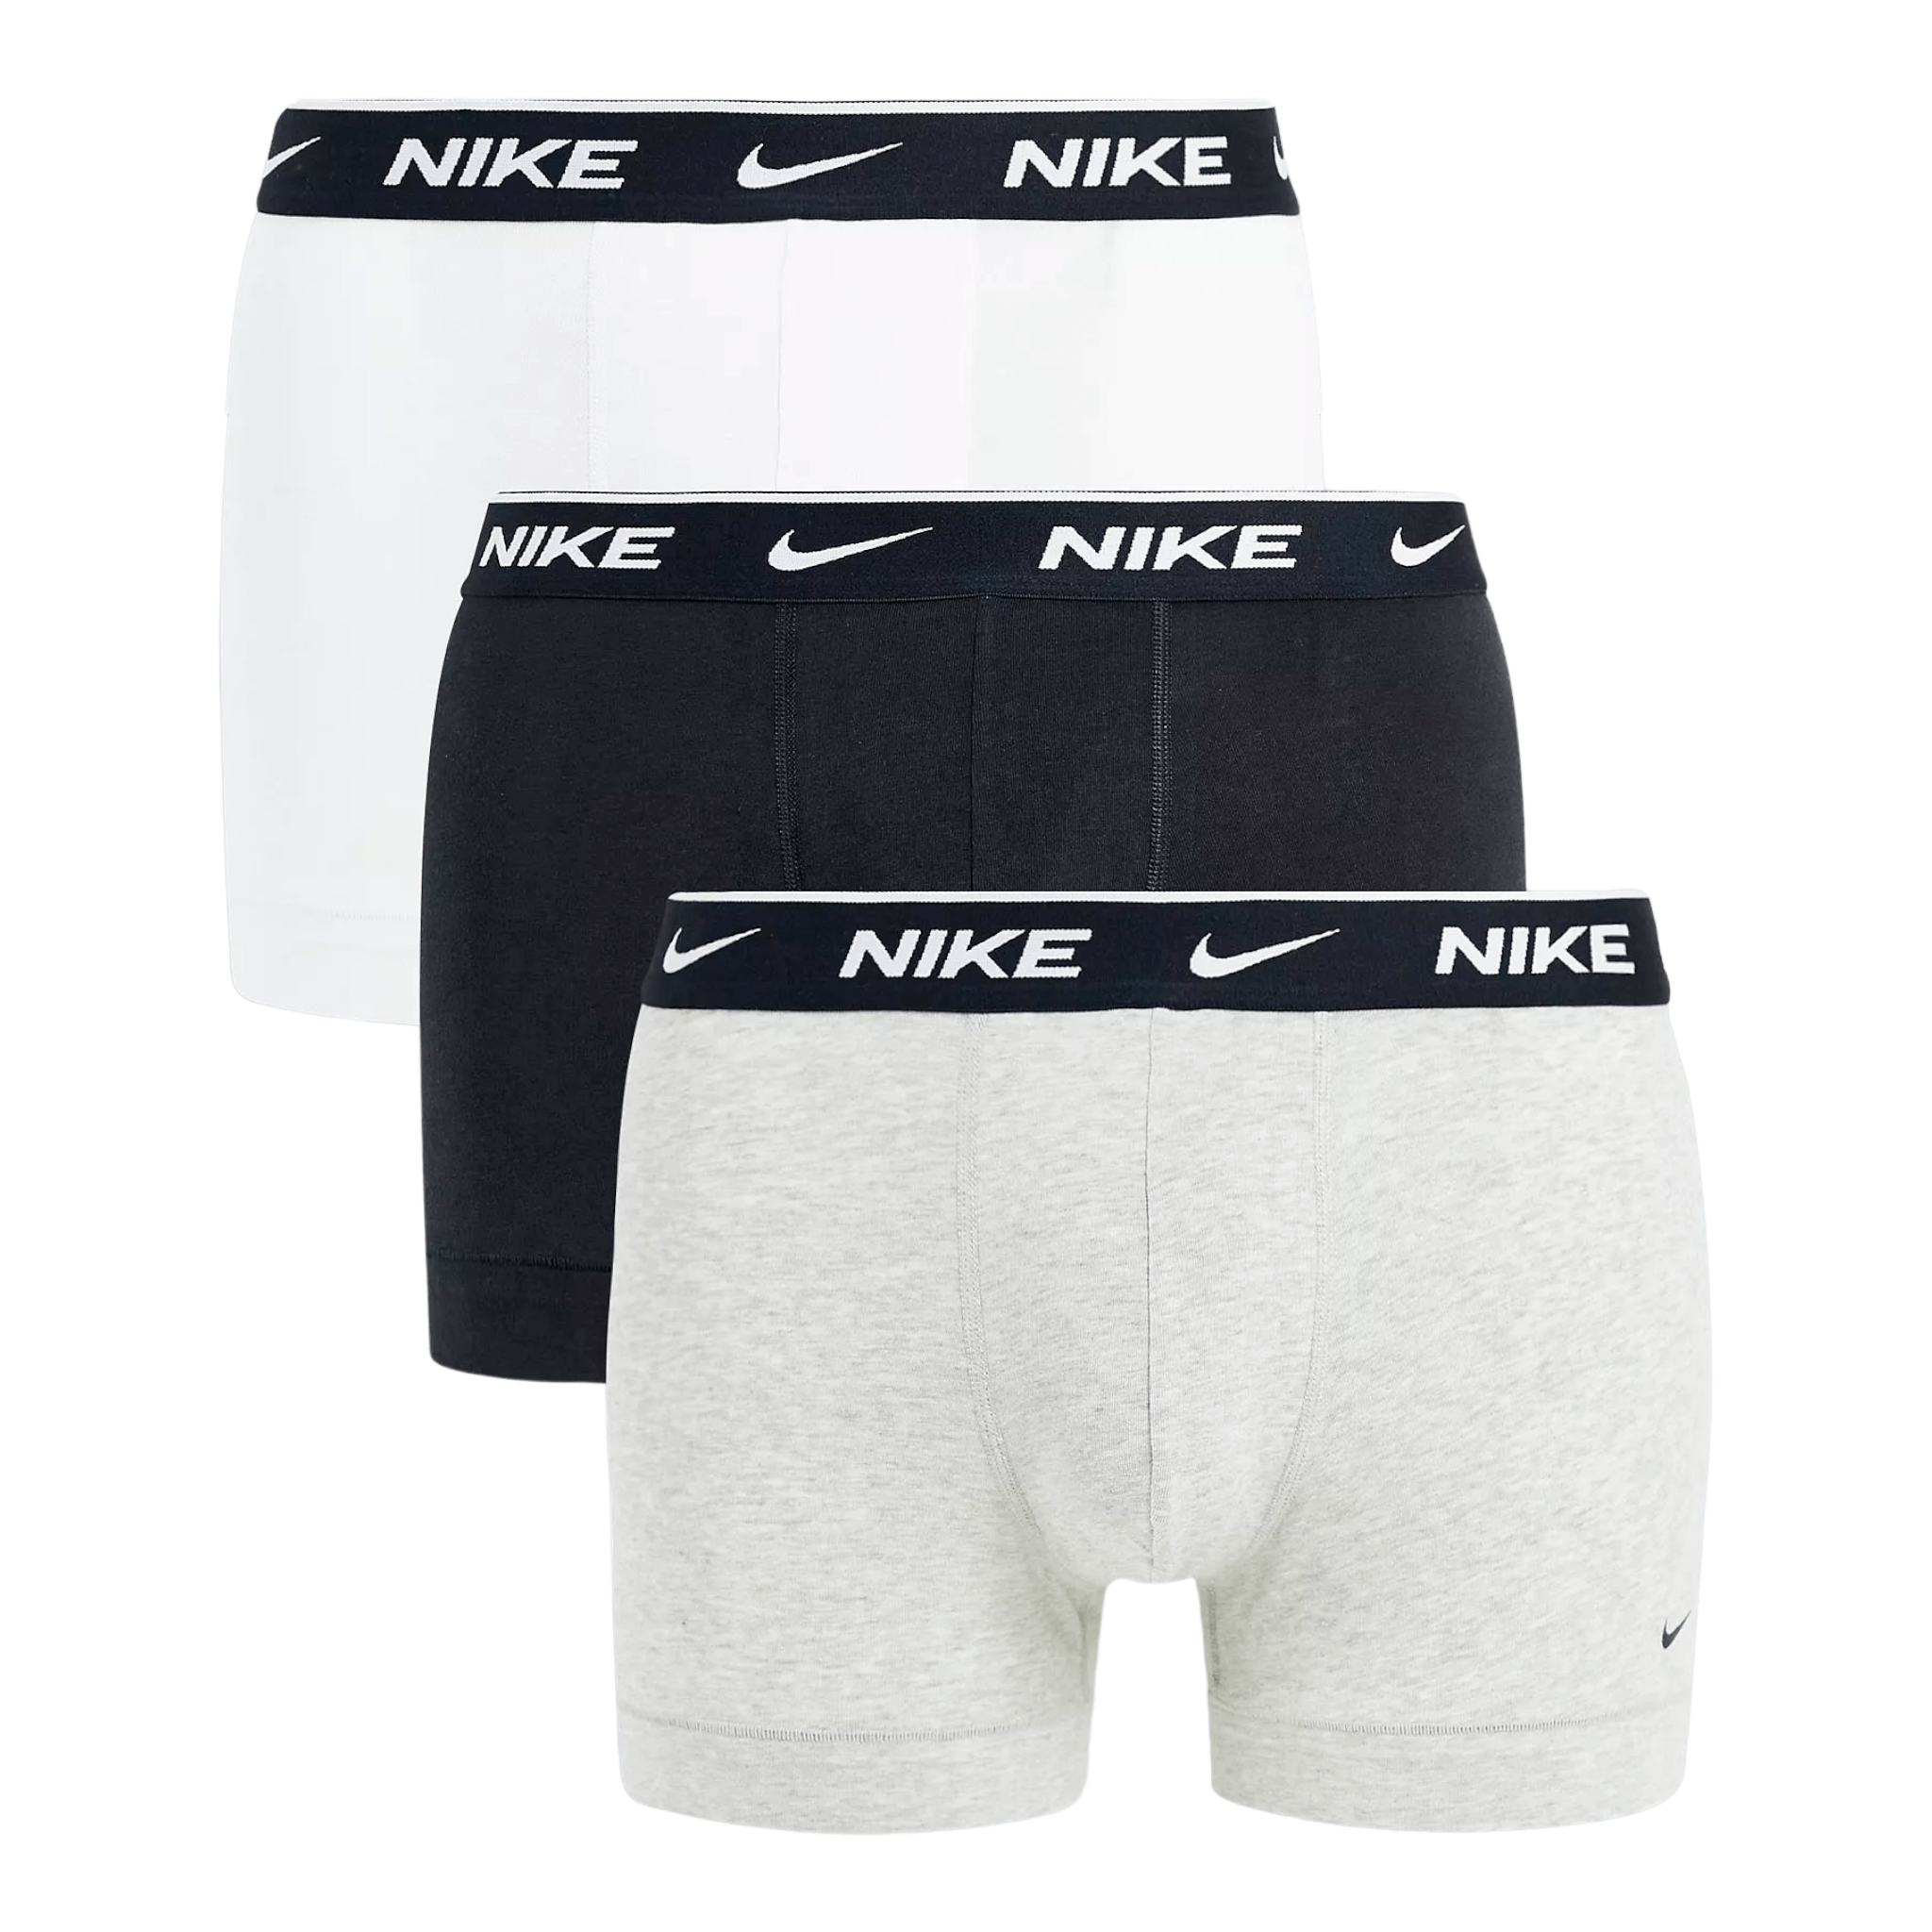 Трусы Nike 3 Pack Cotton Stretch, 3 предмета, белый/черный/серый – заказать  из-за границы с доставкой в «CDEK.Shopping»